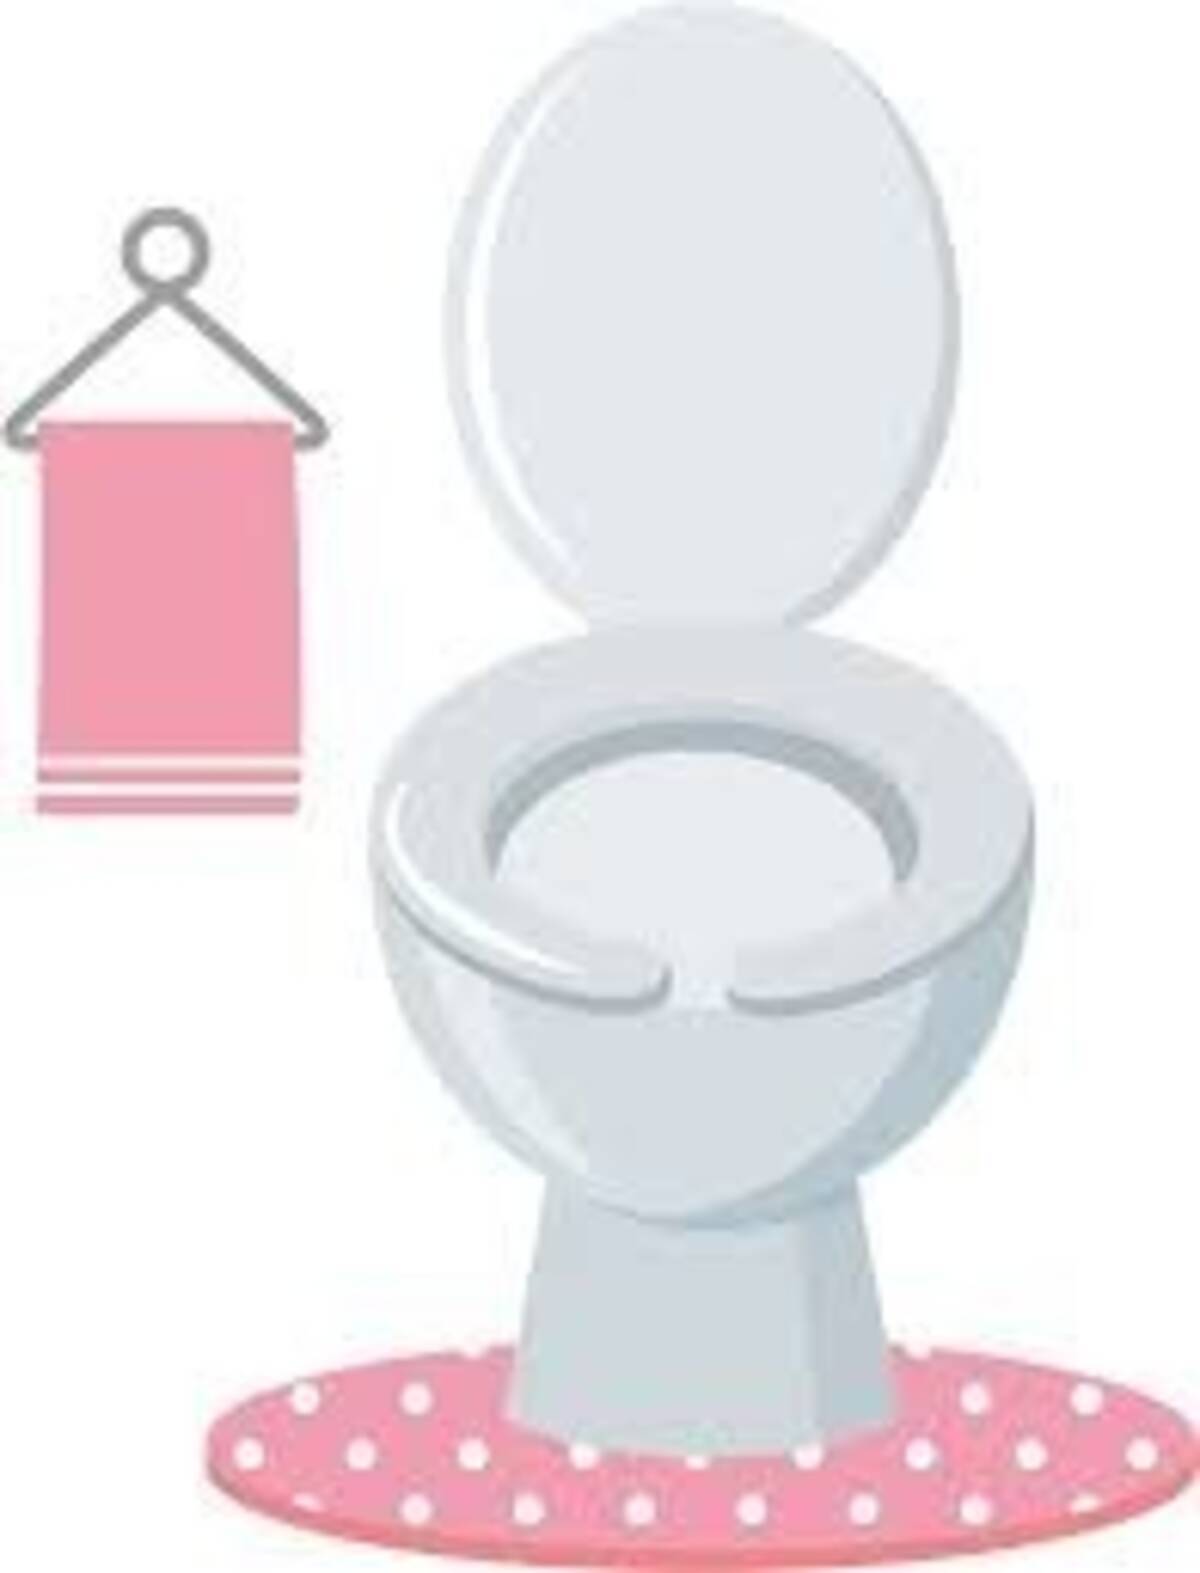 再燃 トイレのふた 閉める 閉めない 対決 衛生上はどっちがいいの 18年6月27日 エキサイトニュース